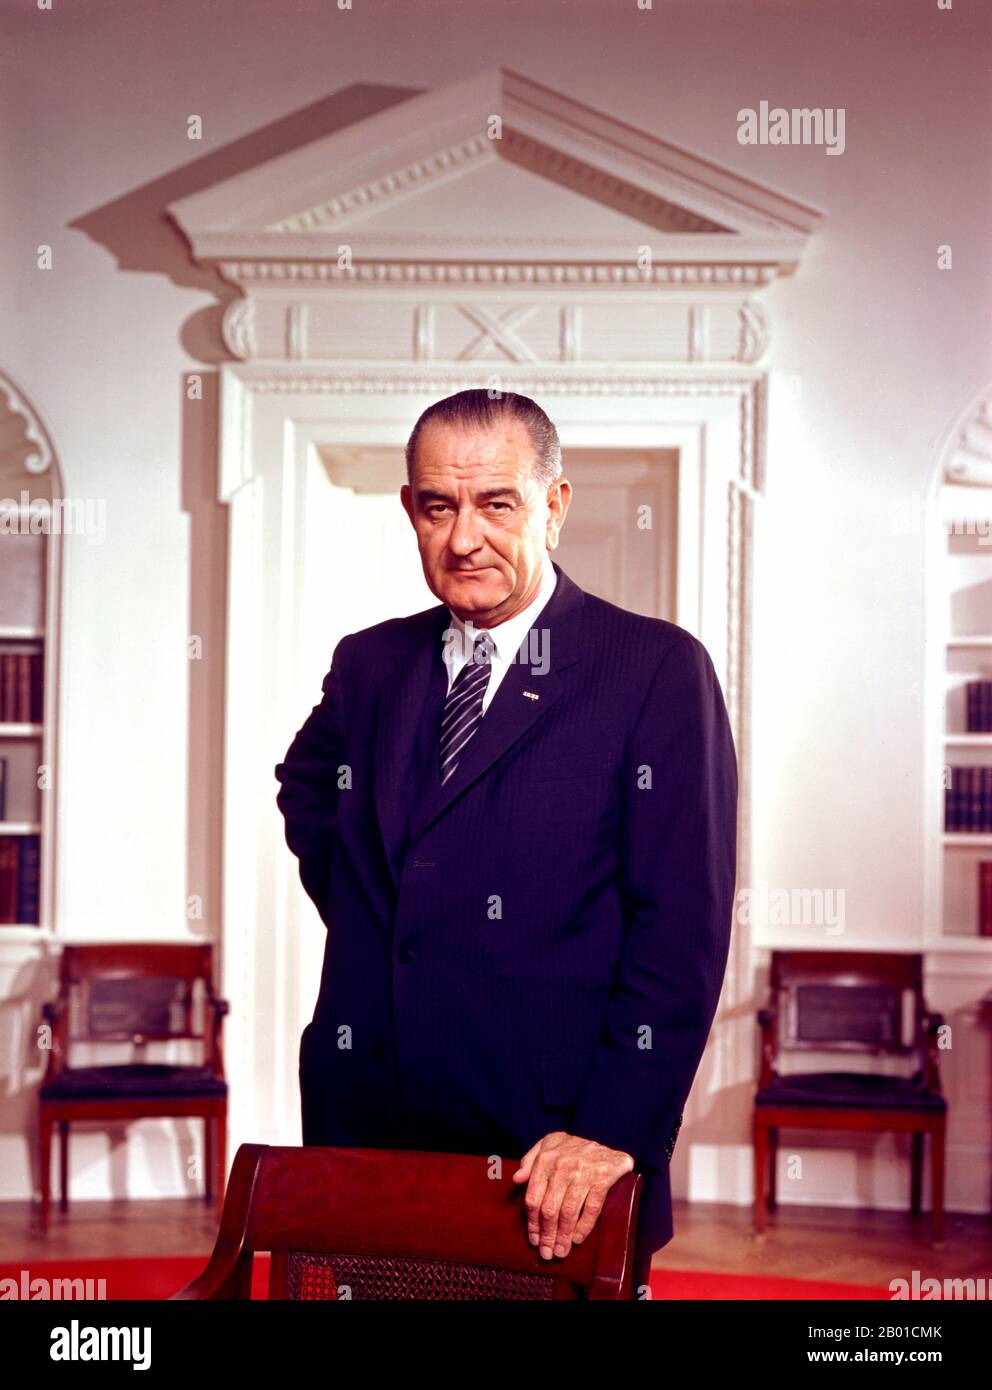 USA: Lyndon Baines Johnson (27. August 1908 - 22. Januar 1973), 36. Präsident der Vereinigten Staaten (1963-1969). Foto von Arnold Newman (1918-2006, öffentlich zugänglich), Oval Office, Weisses Haus, 10. März 1964. Lyndon Baines Johnson, oft als LBJ bezeichnet, war nach seinem Dienst als Vizepräsident der Vereinigten Staaten von 37. (1961-1963) der Präsident der Vereinigten Staaten von 36.. Er ist einer von nur vier Personen, die in allen vier gewählten Bundesämtern der Vereinigten Staaten gedient haben: Repräsentant, Senator, Vizepräsident und Präsident. Stockfoto